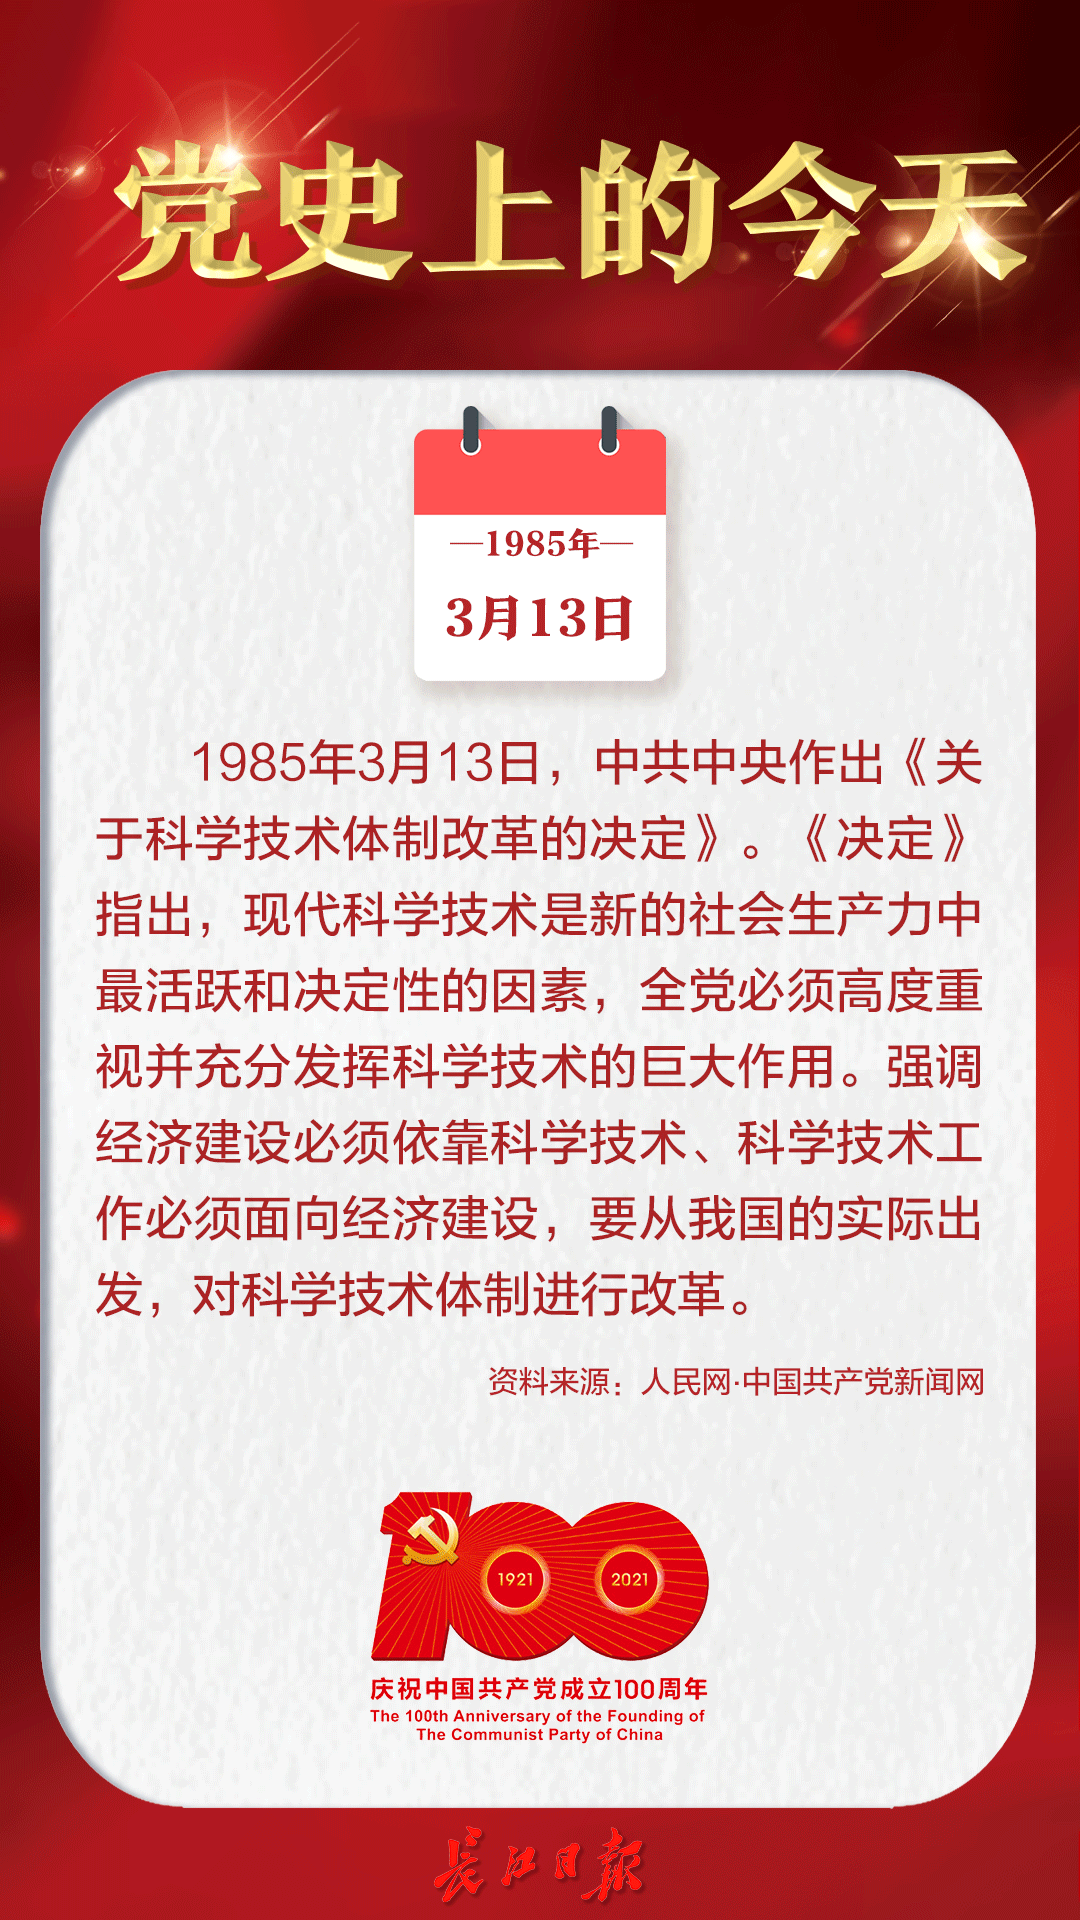 1985年3月13日中共中央作出关于科学技术体制改革的决定丨党史上的